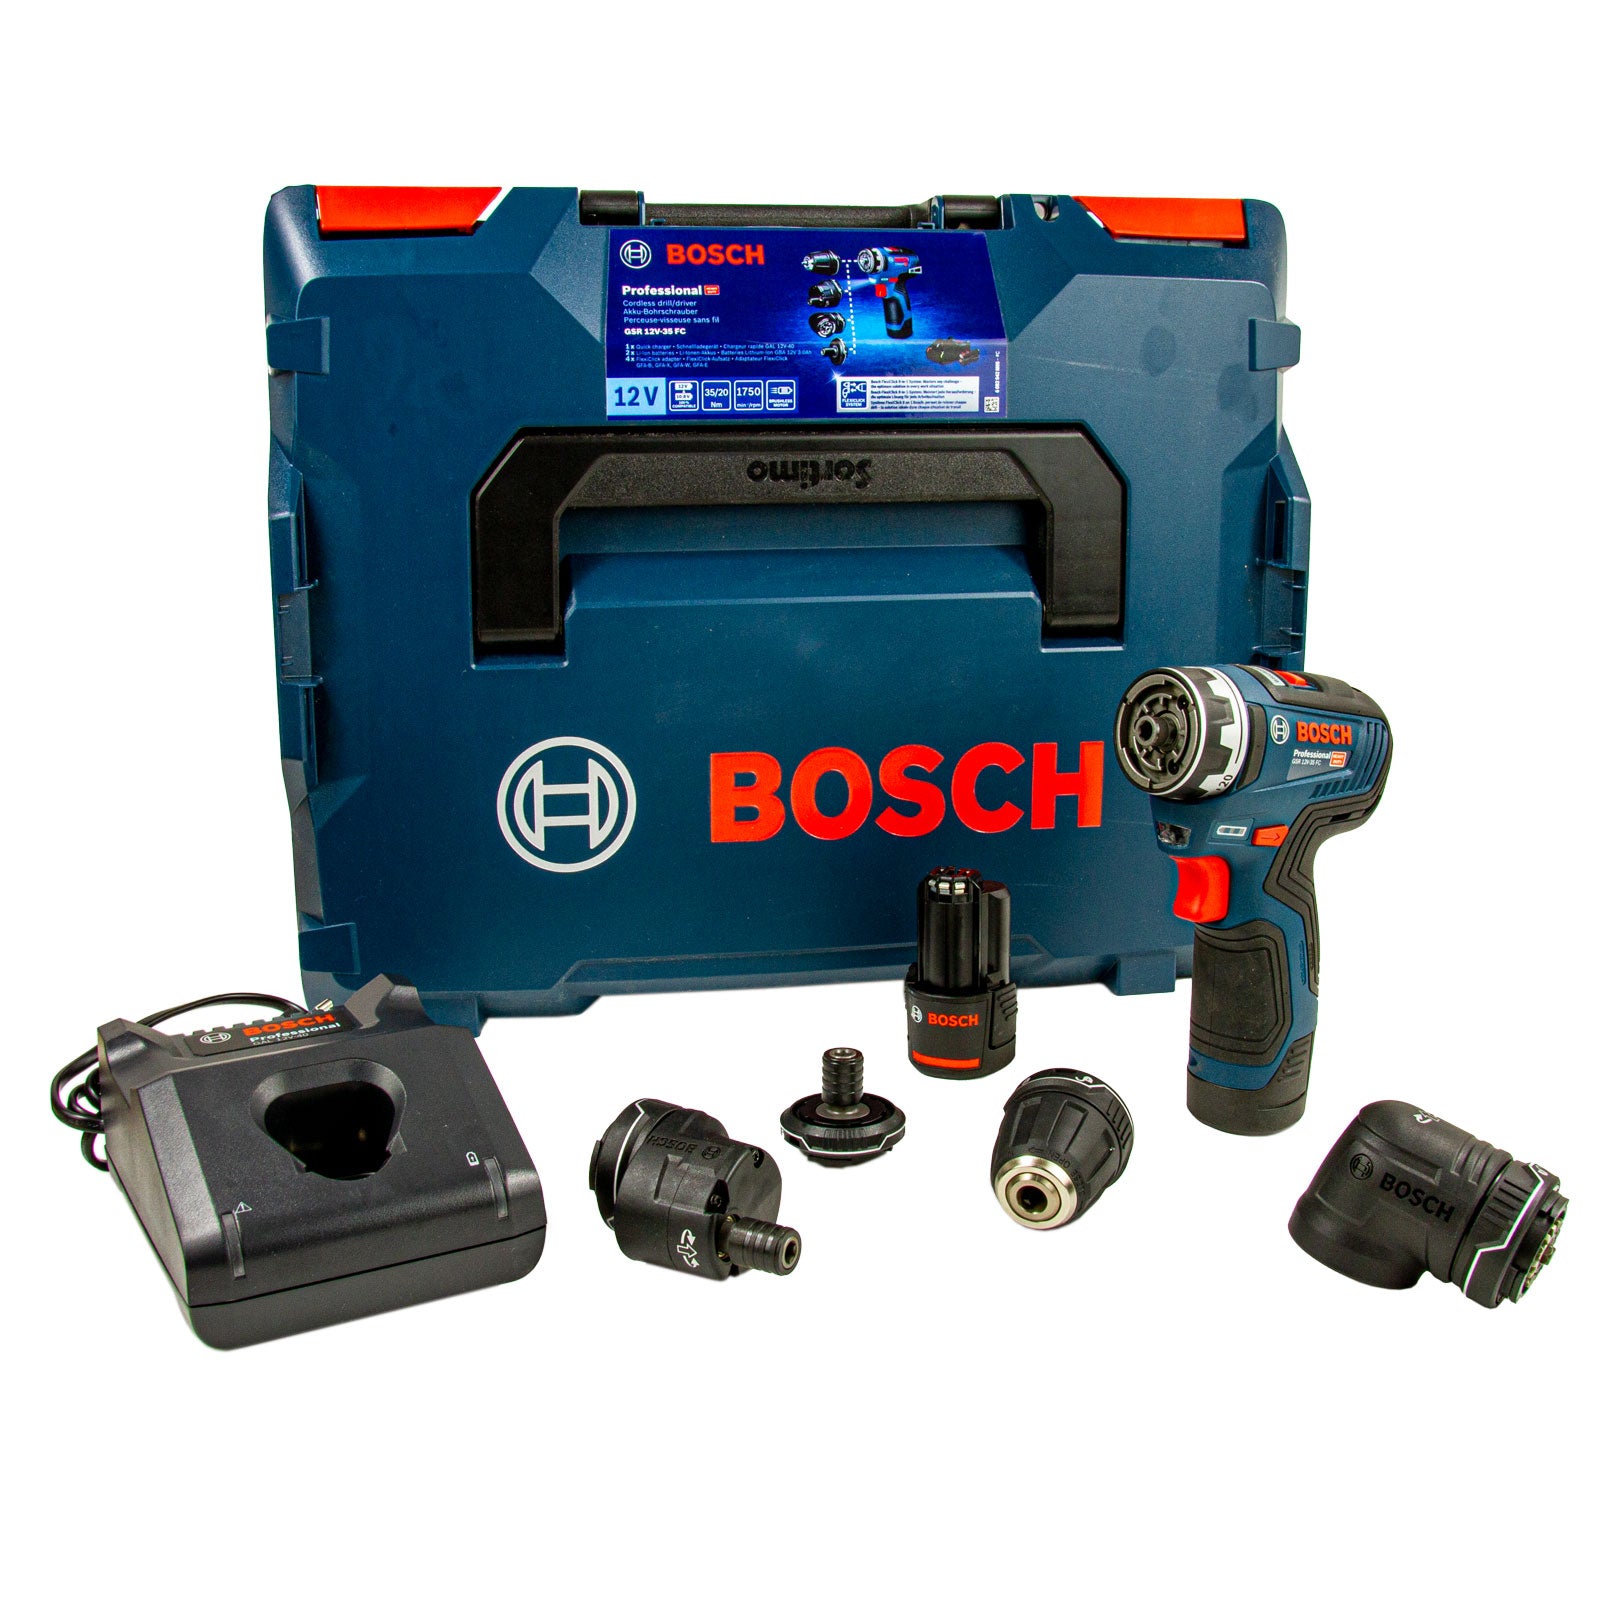 Bosch Professional 12V perceuse-visseuse sans-fil GSR 12V-35 FC